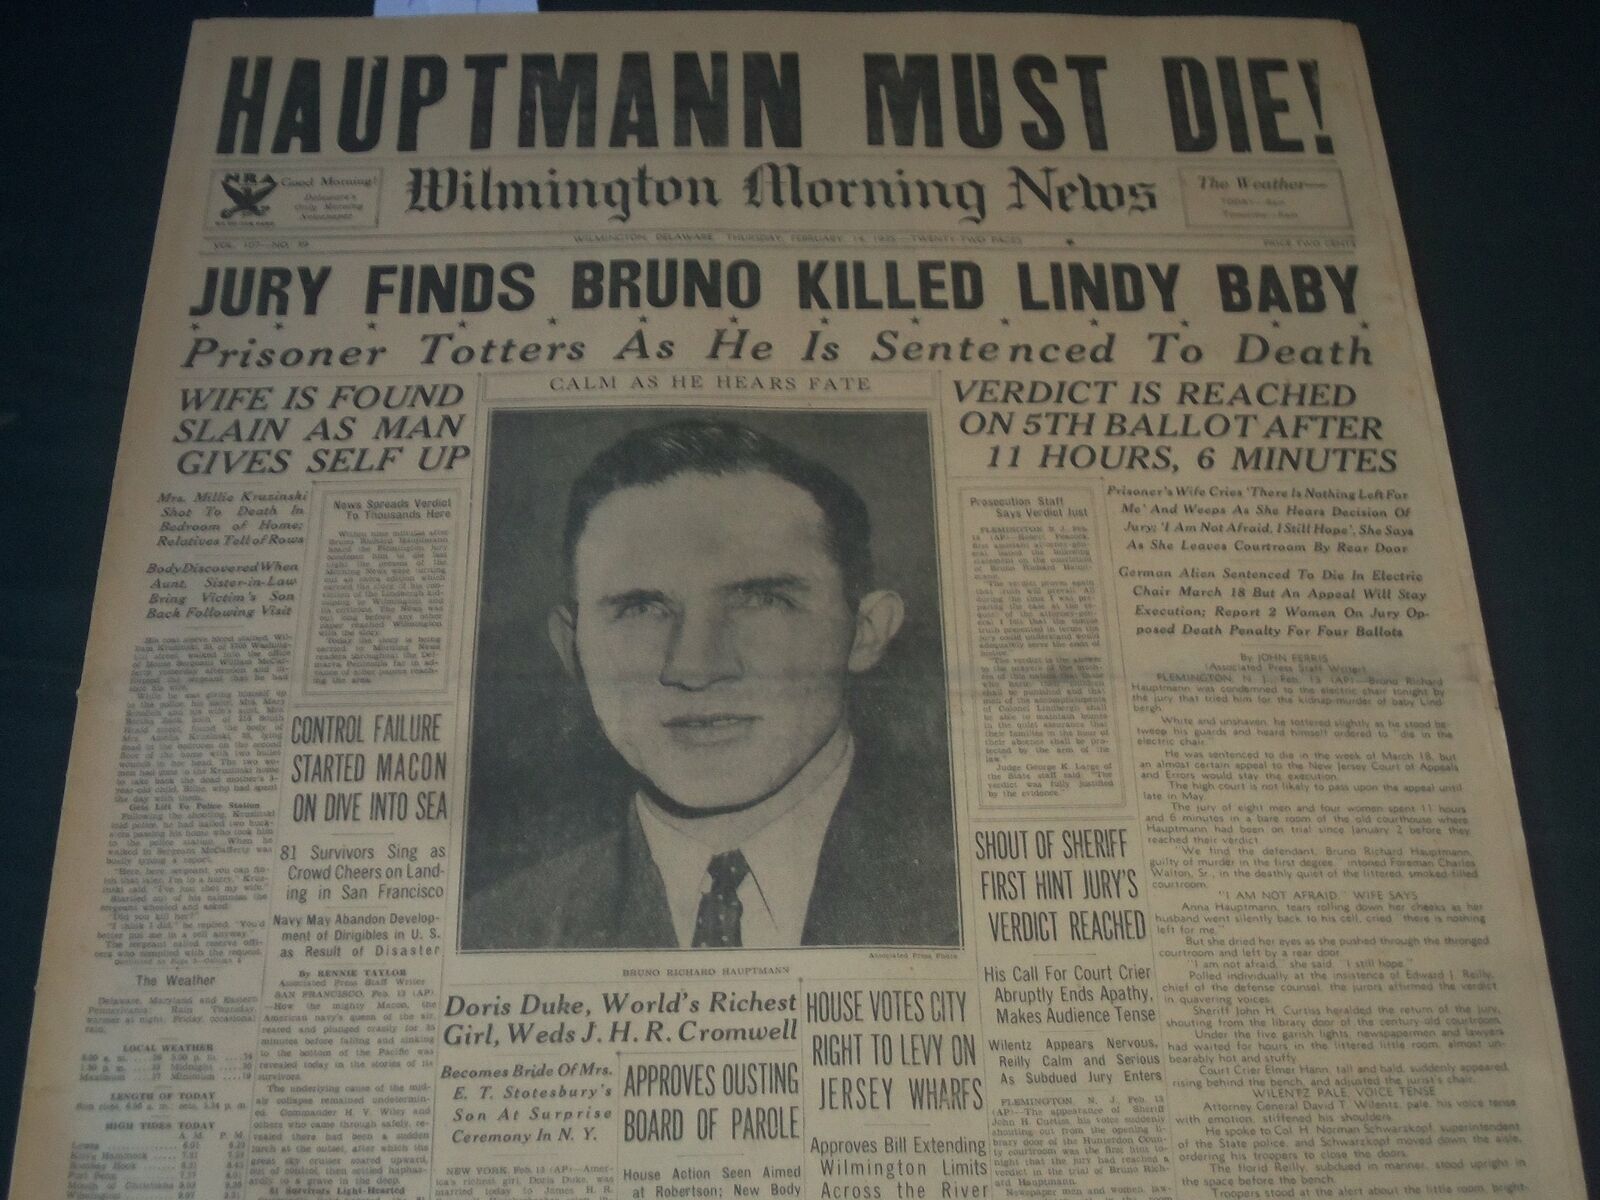 1935 FEBRUARY 14 WILMINGTON NEWS NEWSPAPER - HAUPTMANN MUST DIE - NT 7291